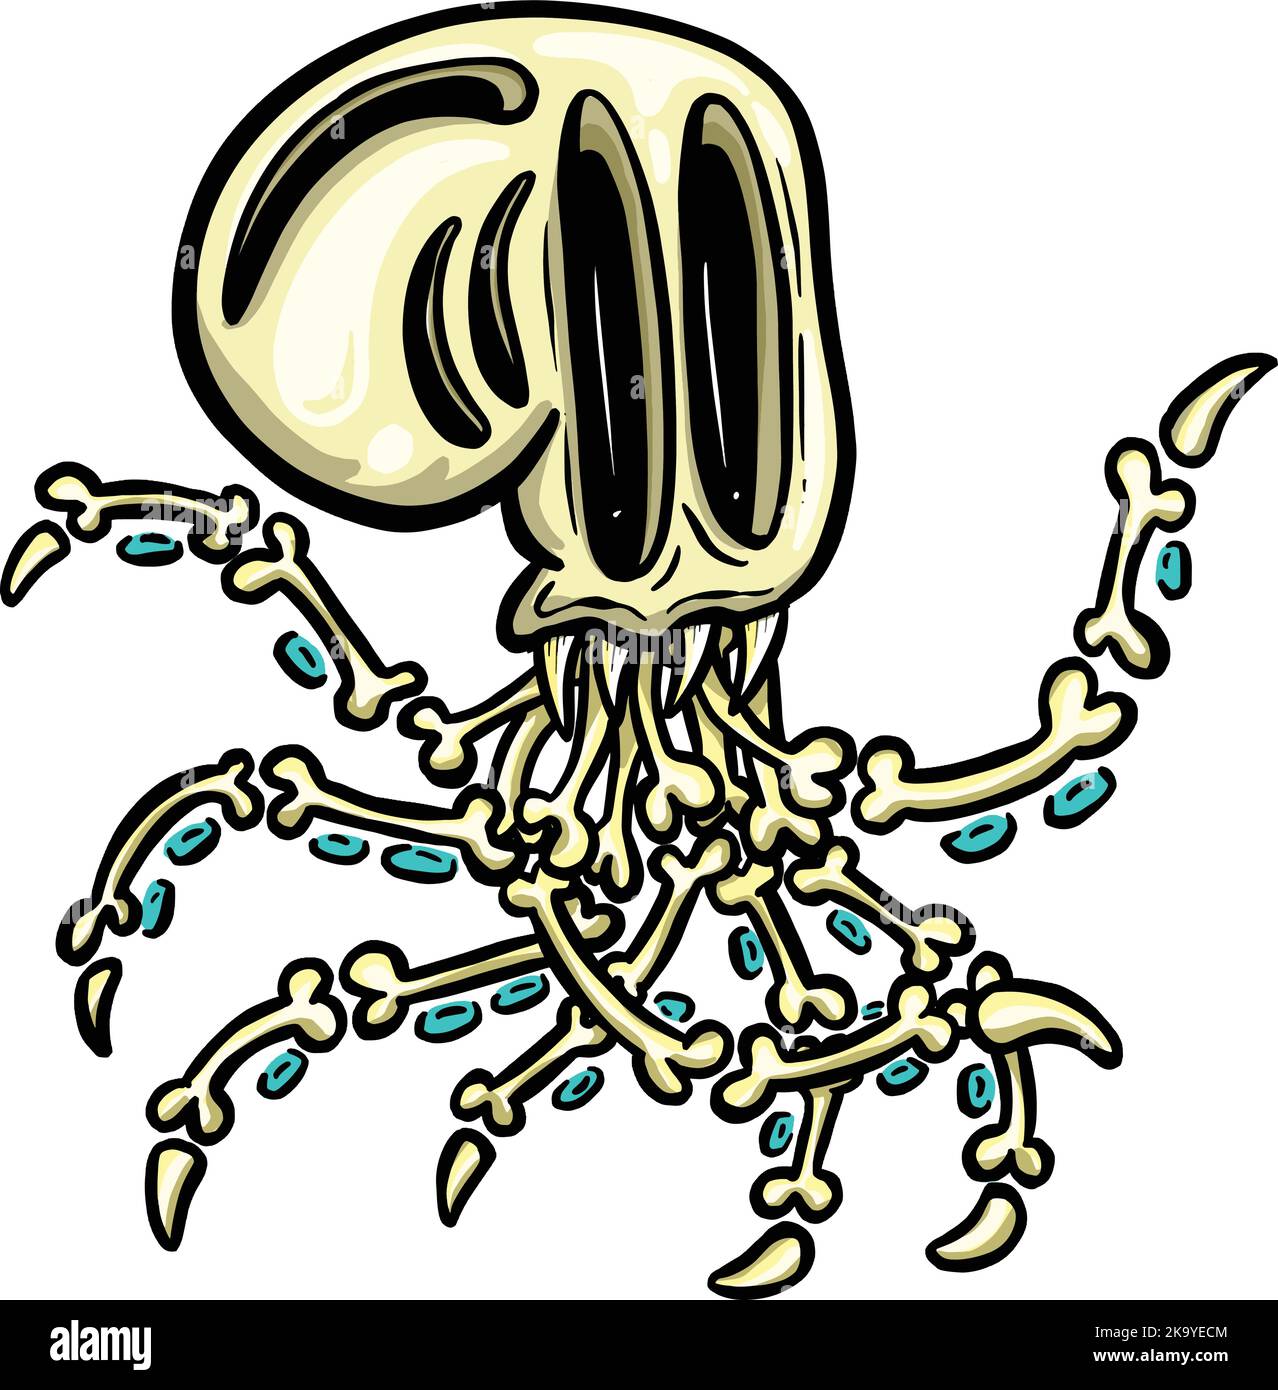 Octopus Skeleton Halloween Cartoon Illustrazione con succhiatori creatura del Mare profondo Illustrazione Vettoriale